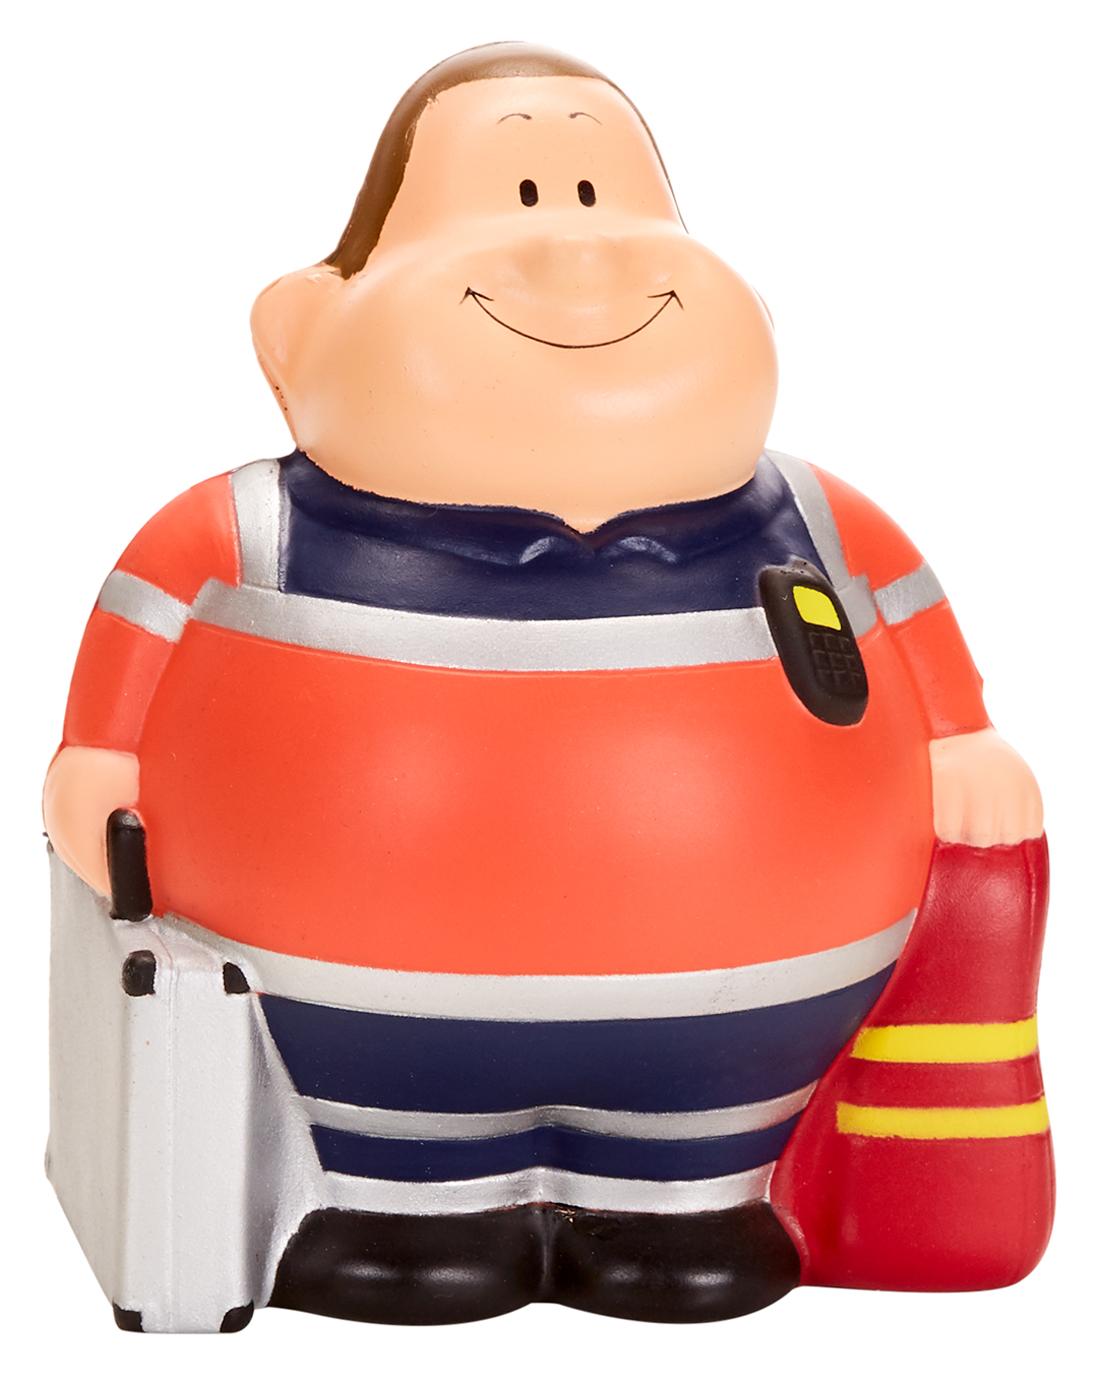 Paramedic Bert?